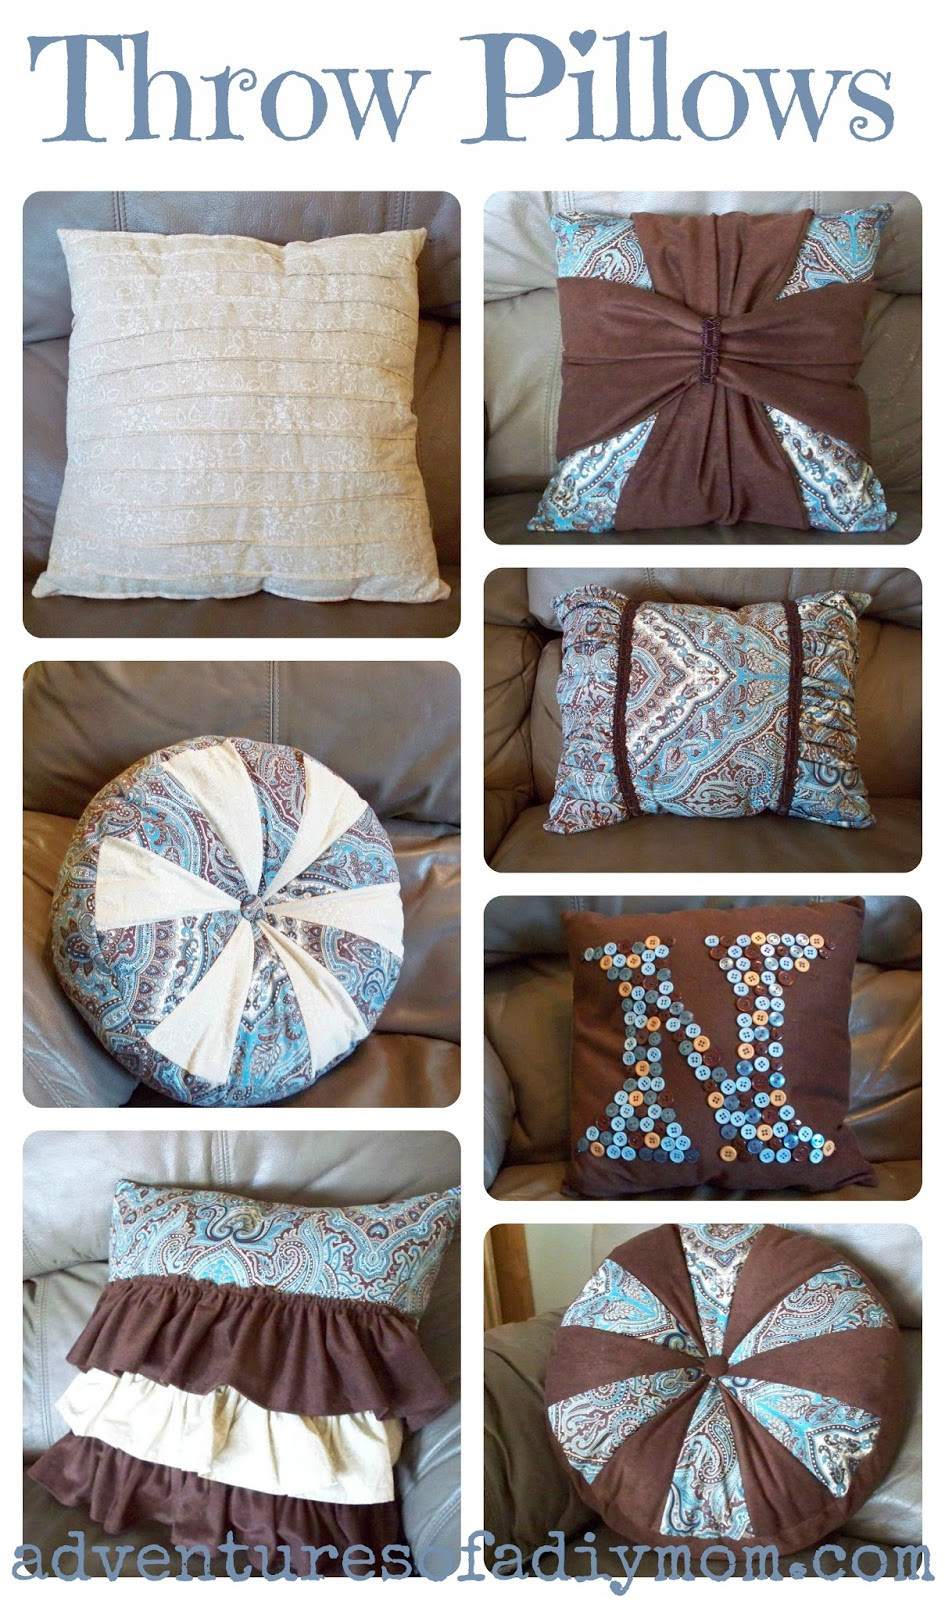 DIY Decor Pillows
 How to Make Easy Throw Pillows Adventures of a DIY Mom